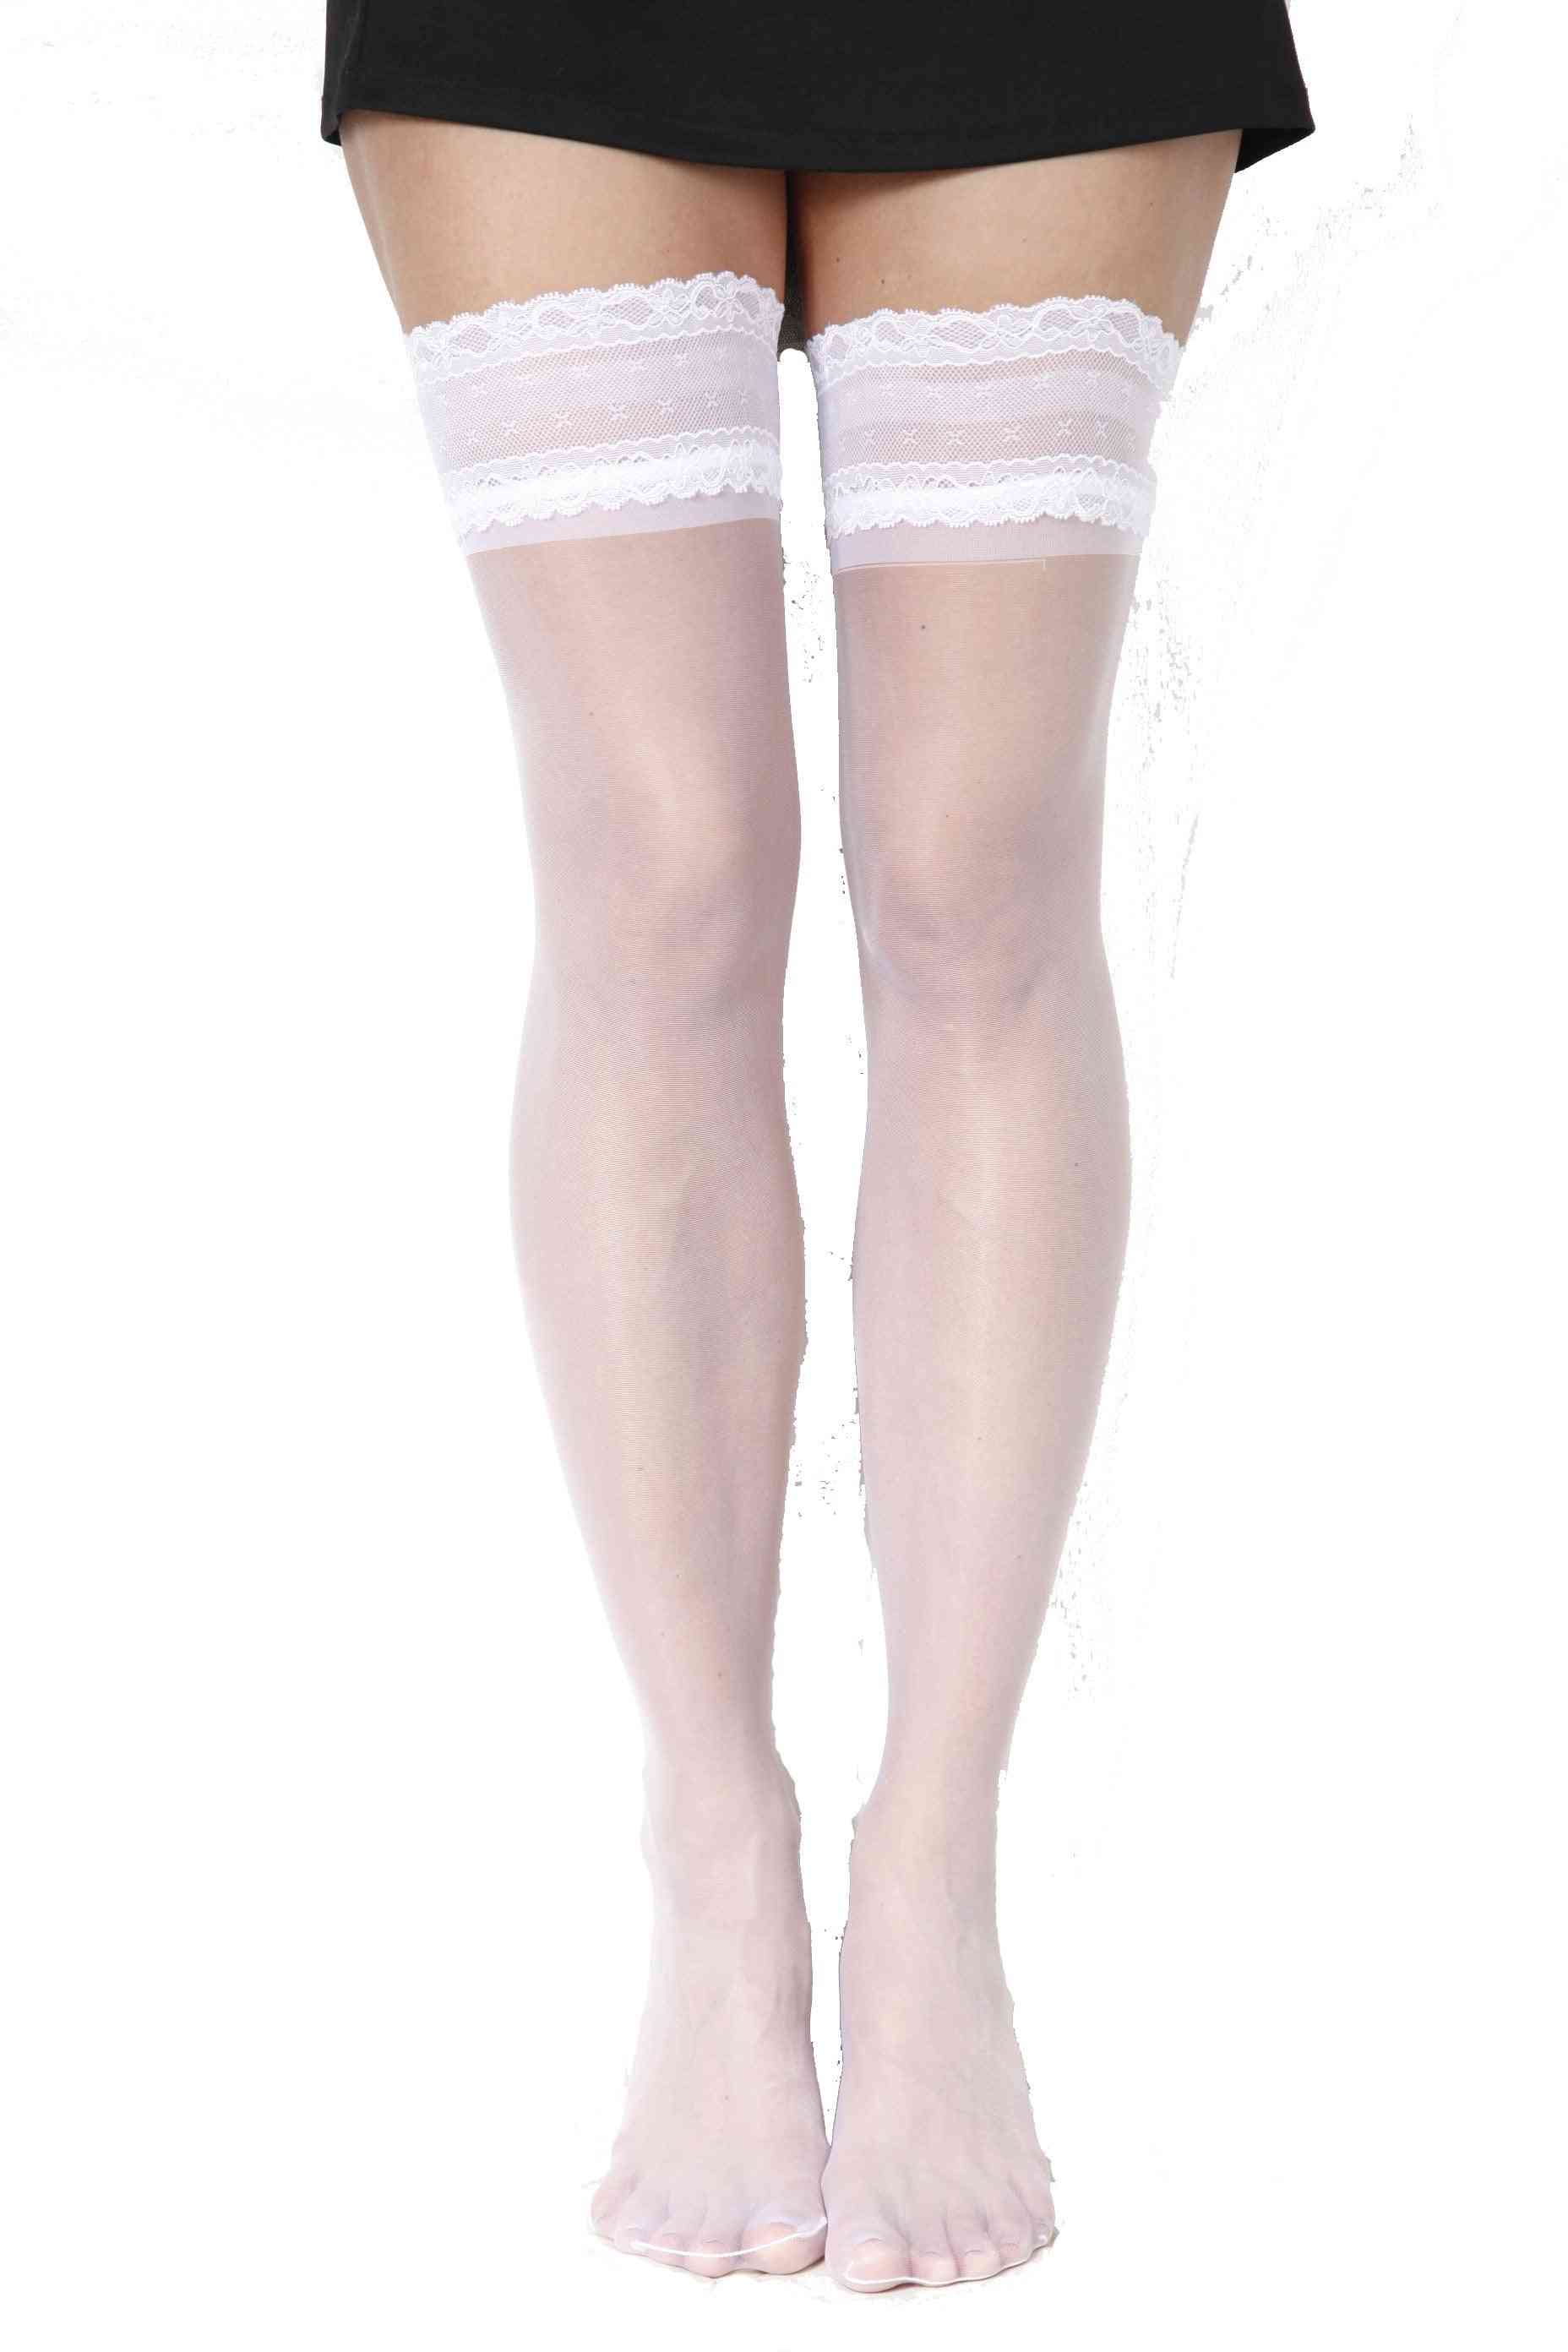 Sheer Elegant Stay-ups Stockings For Women